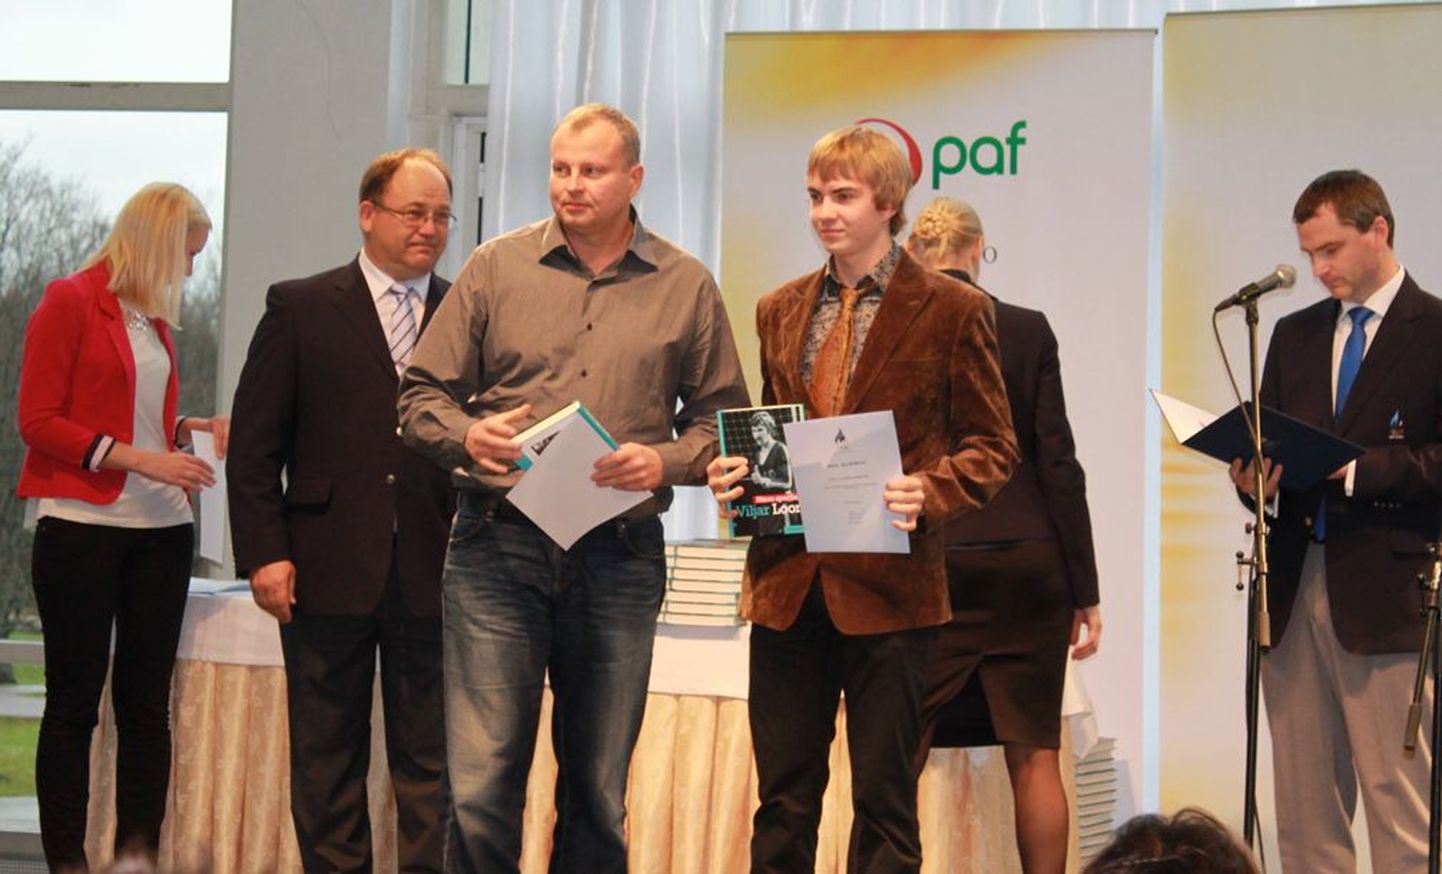 Eesti olümpiakomitee pidulikule tänuvastuvõtul käisid olid Viljandi veemotospordiklubi liikmed Paul Zujenkov  ja Aivar Kommisaar.